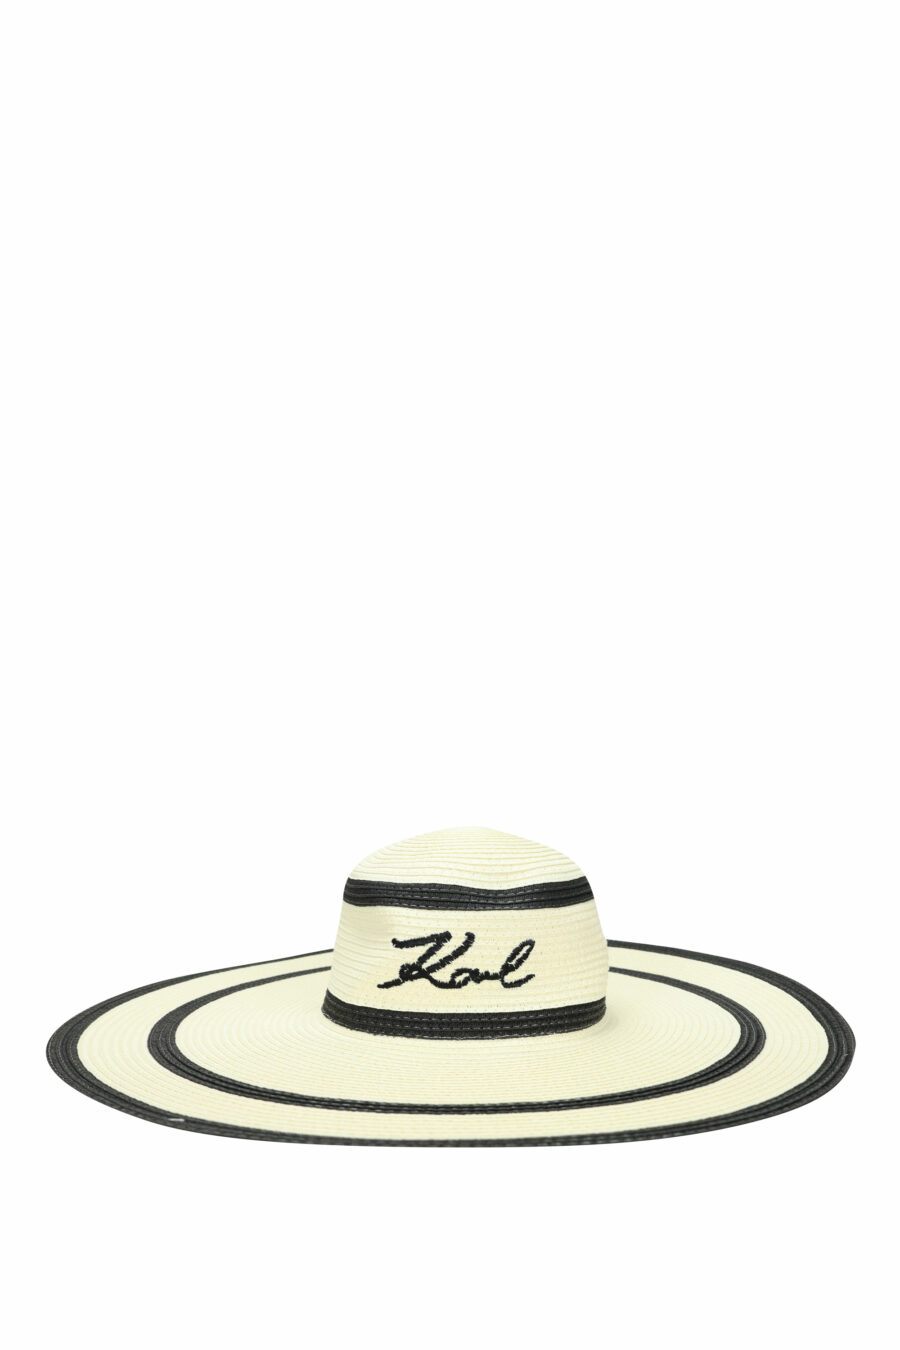 Sombrero de playa con lineas negras y maxilogo "karl" - 8720744817925 1